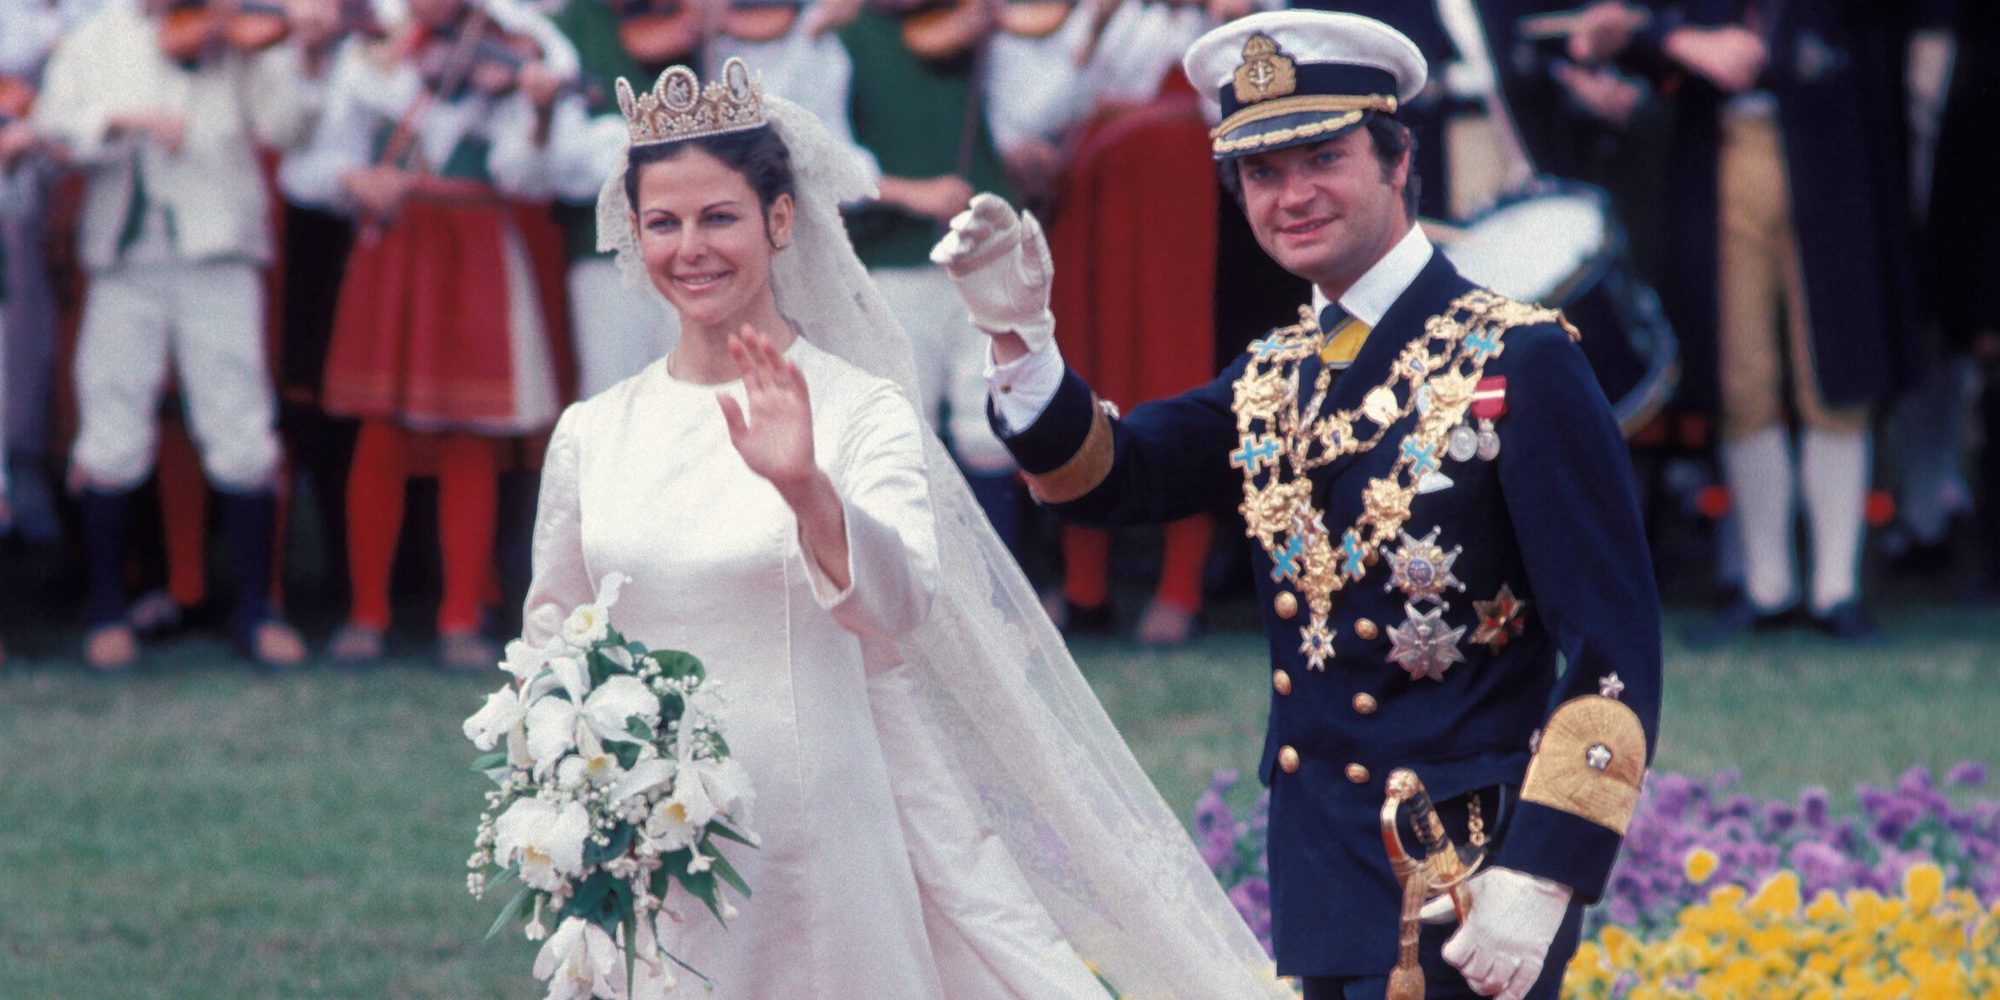 Los 40 años de matrimonio de los Reyes Carlos Gustavo y Silvia de Suecia en 4 momentos clave